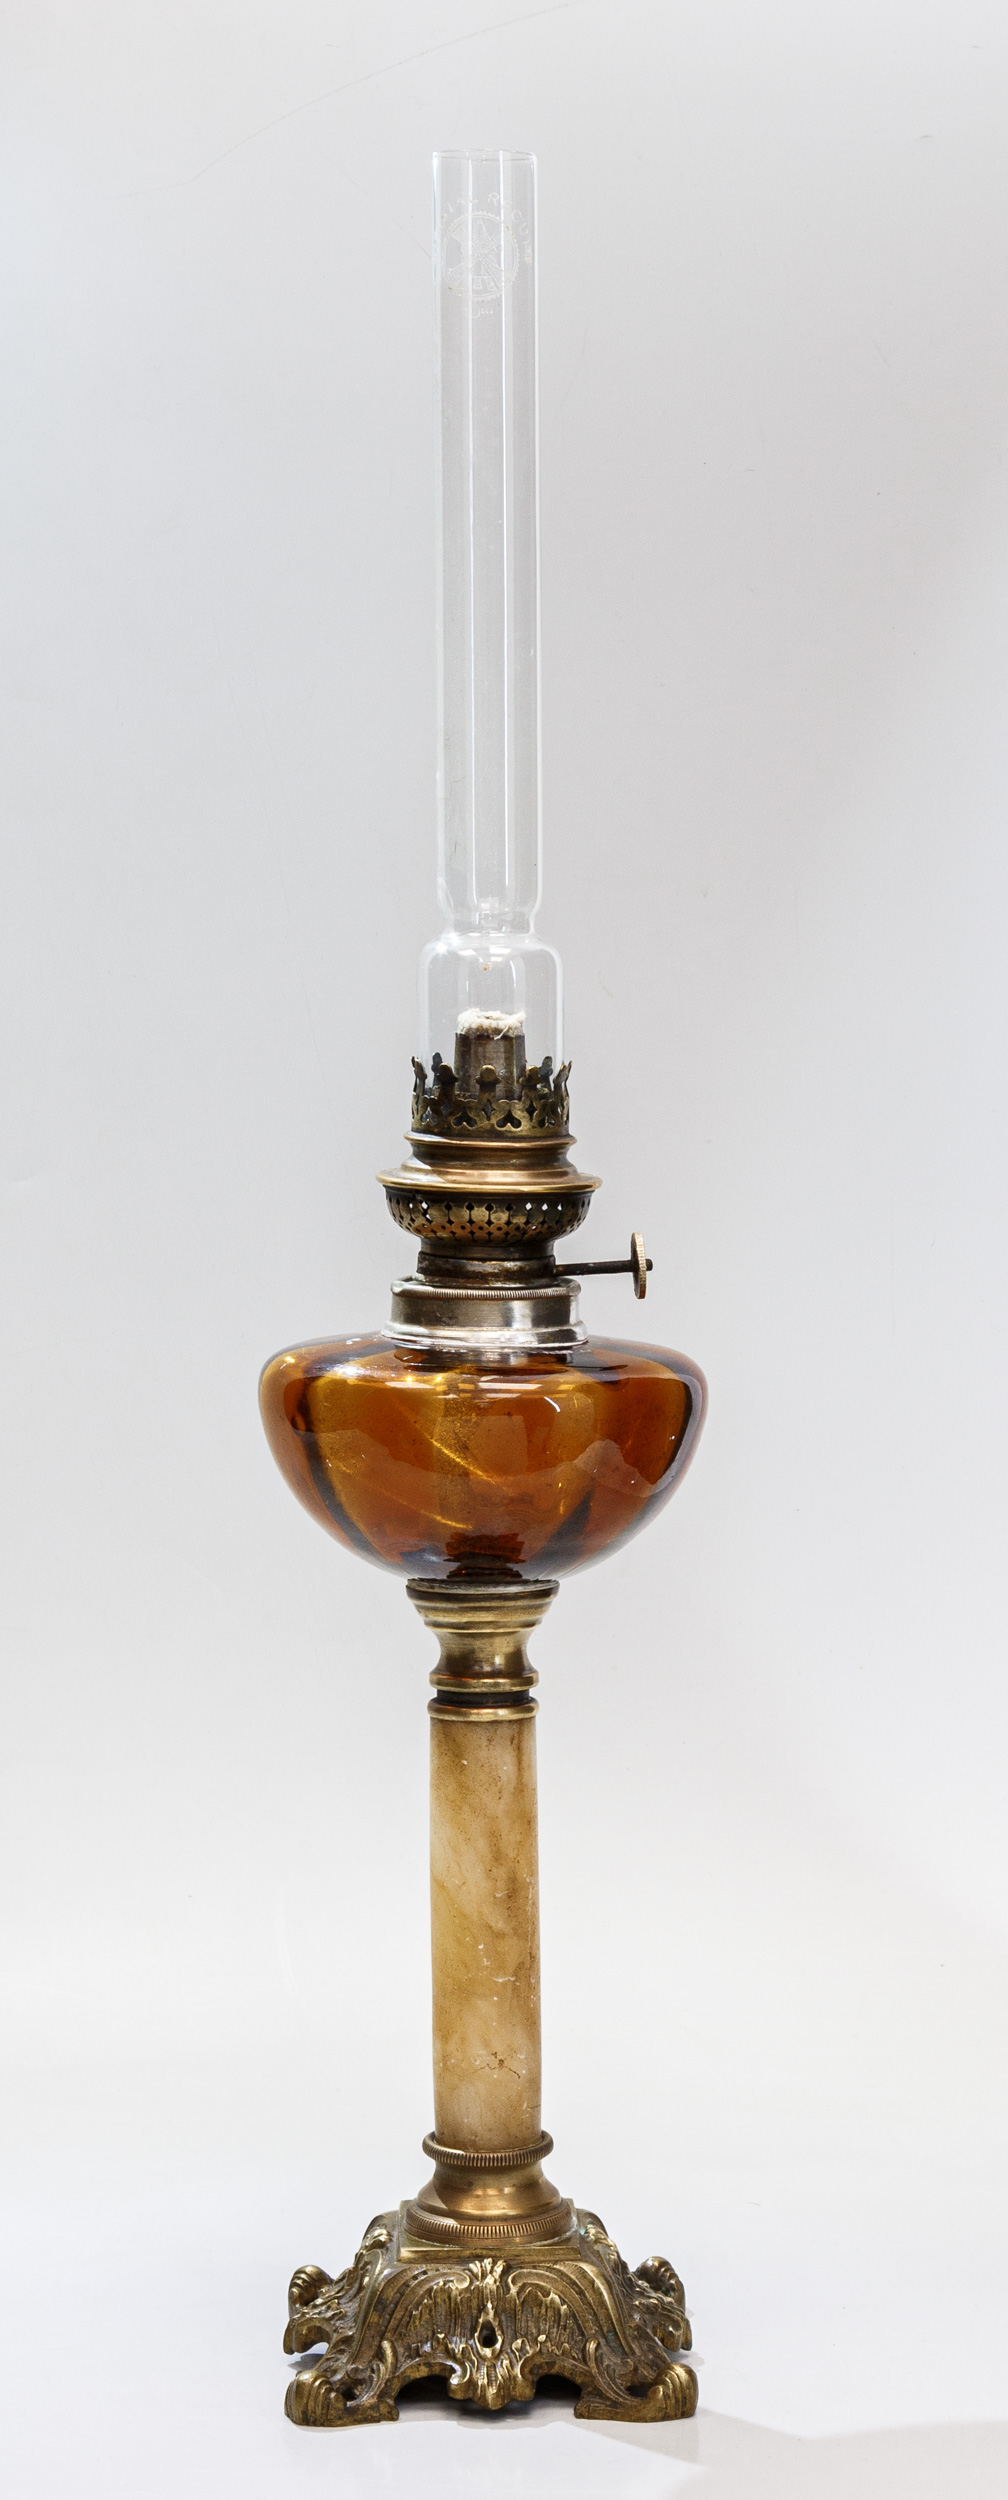 Керосиновая лампа невысокая, на ножке, декорированной светлым ониксом